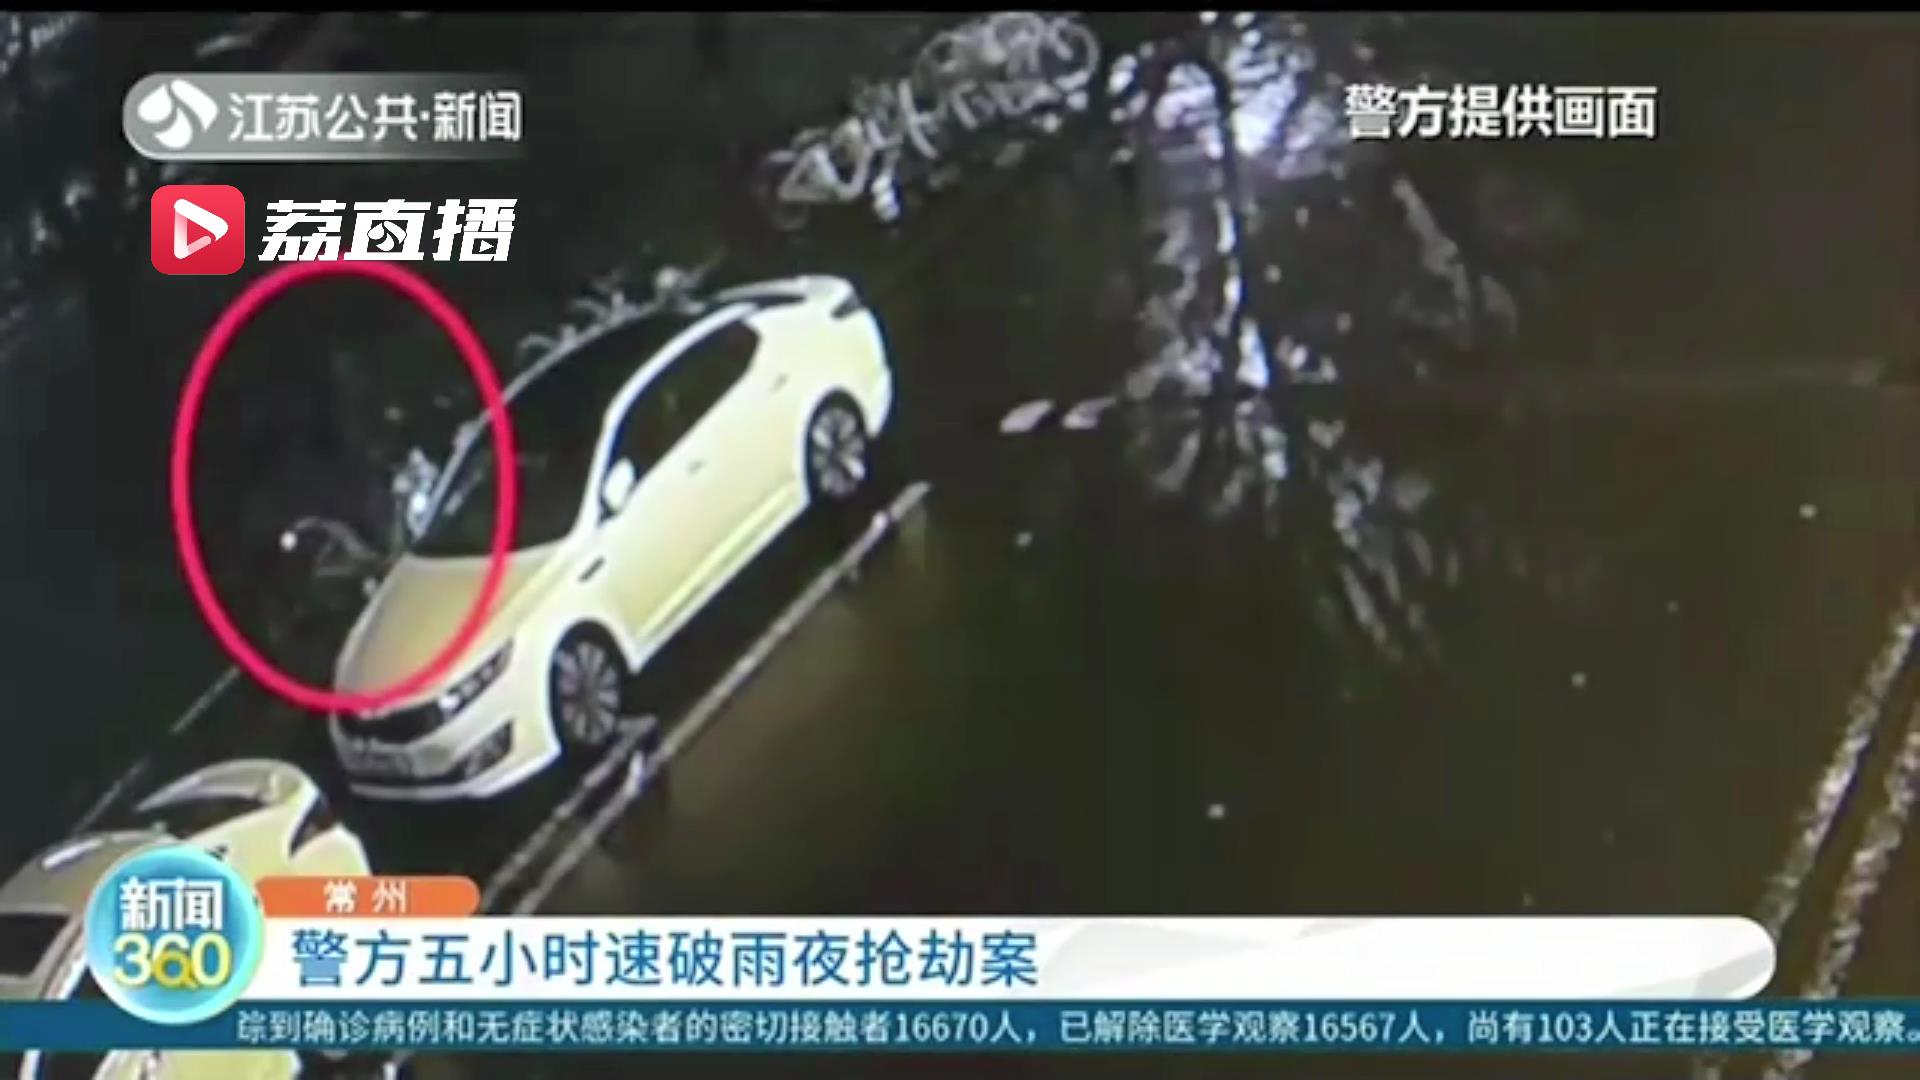 女子倒车失误冲出停车场 砸中路边车所幸无人受伤_北京时间